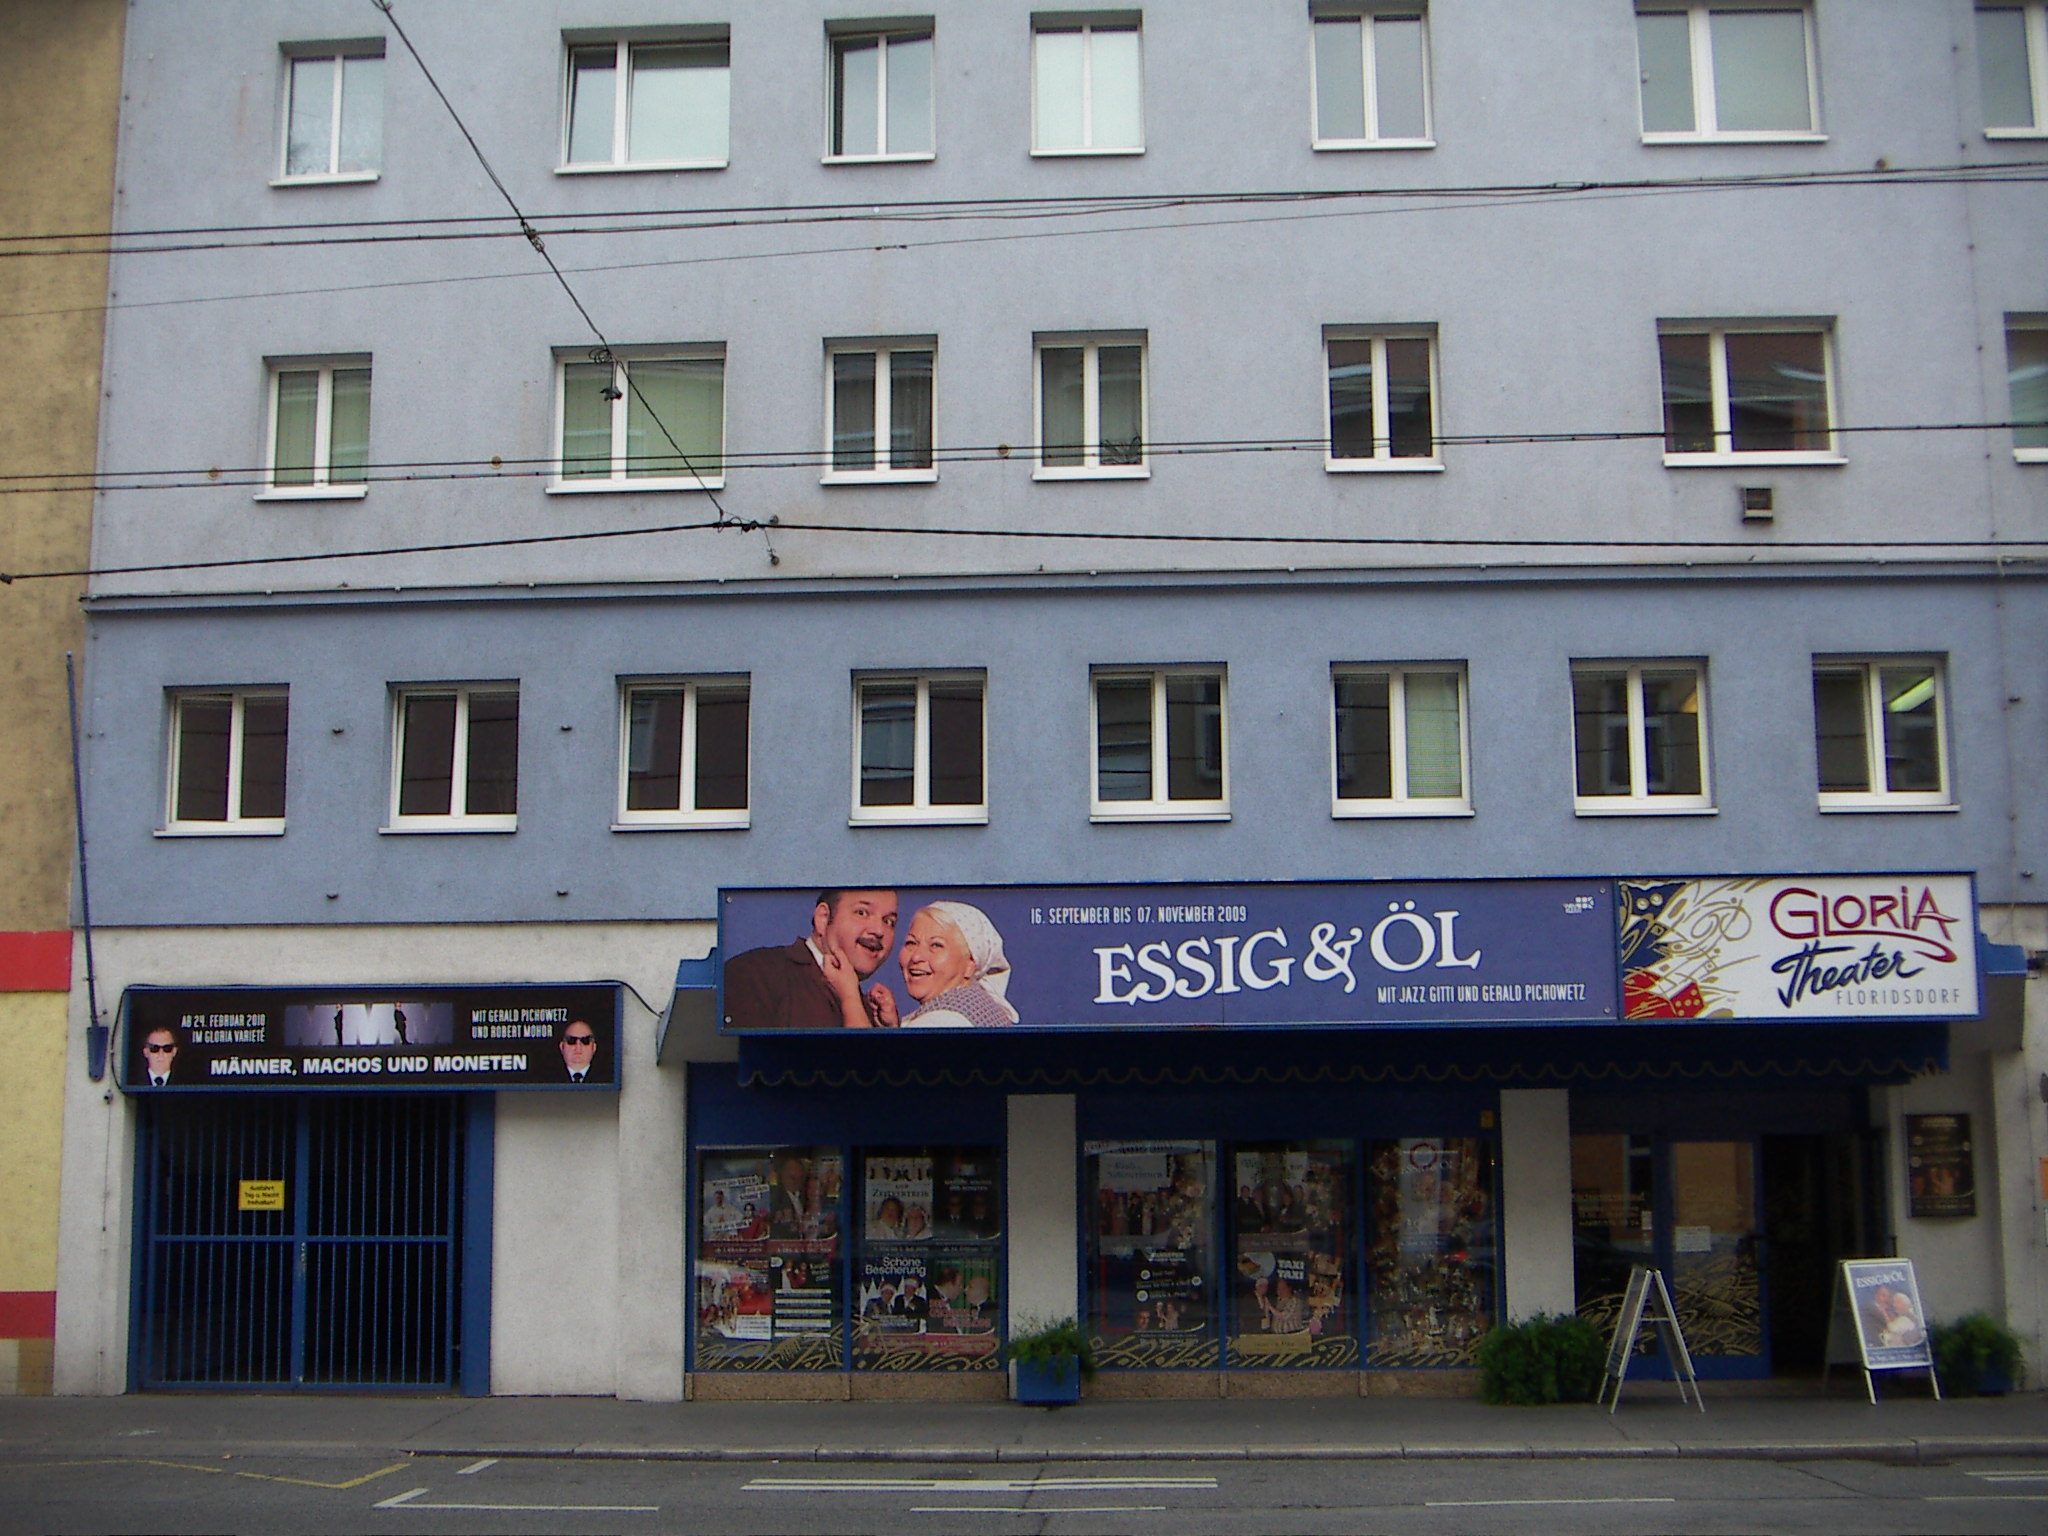 Das Gloria Theater ist ein privates Theater im 21. Wiener Gemeindebezirk.